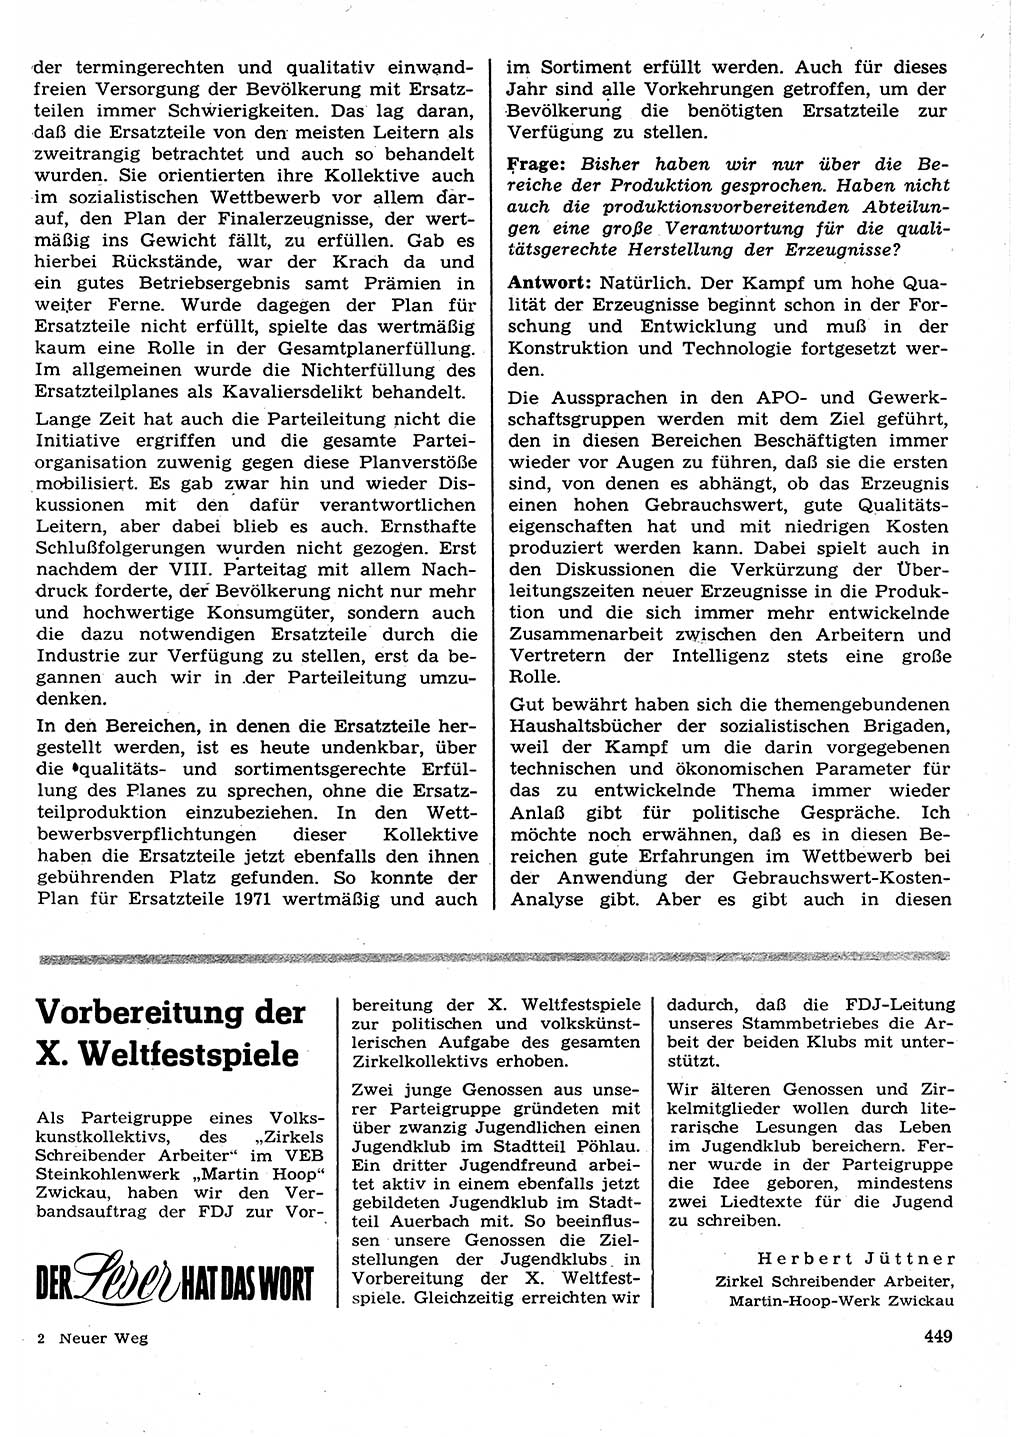 Neuer Weg (NW), Organ des Zentralkomitees (ZK) der SED (Sozialistische Einheitspartei Deutschlands) für Fragen des Parteilebens, 27. Jahrgang [Deutsche Demokratische Republik (DDR)] 1972, Seite 449 (NW ZK SED DDR 1972, S. 449)